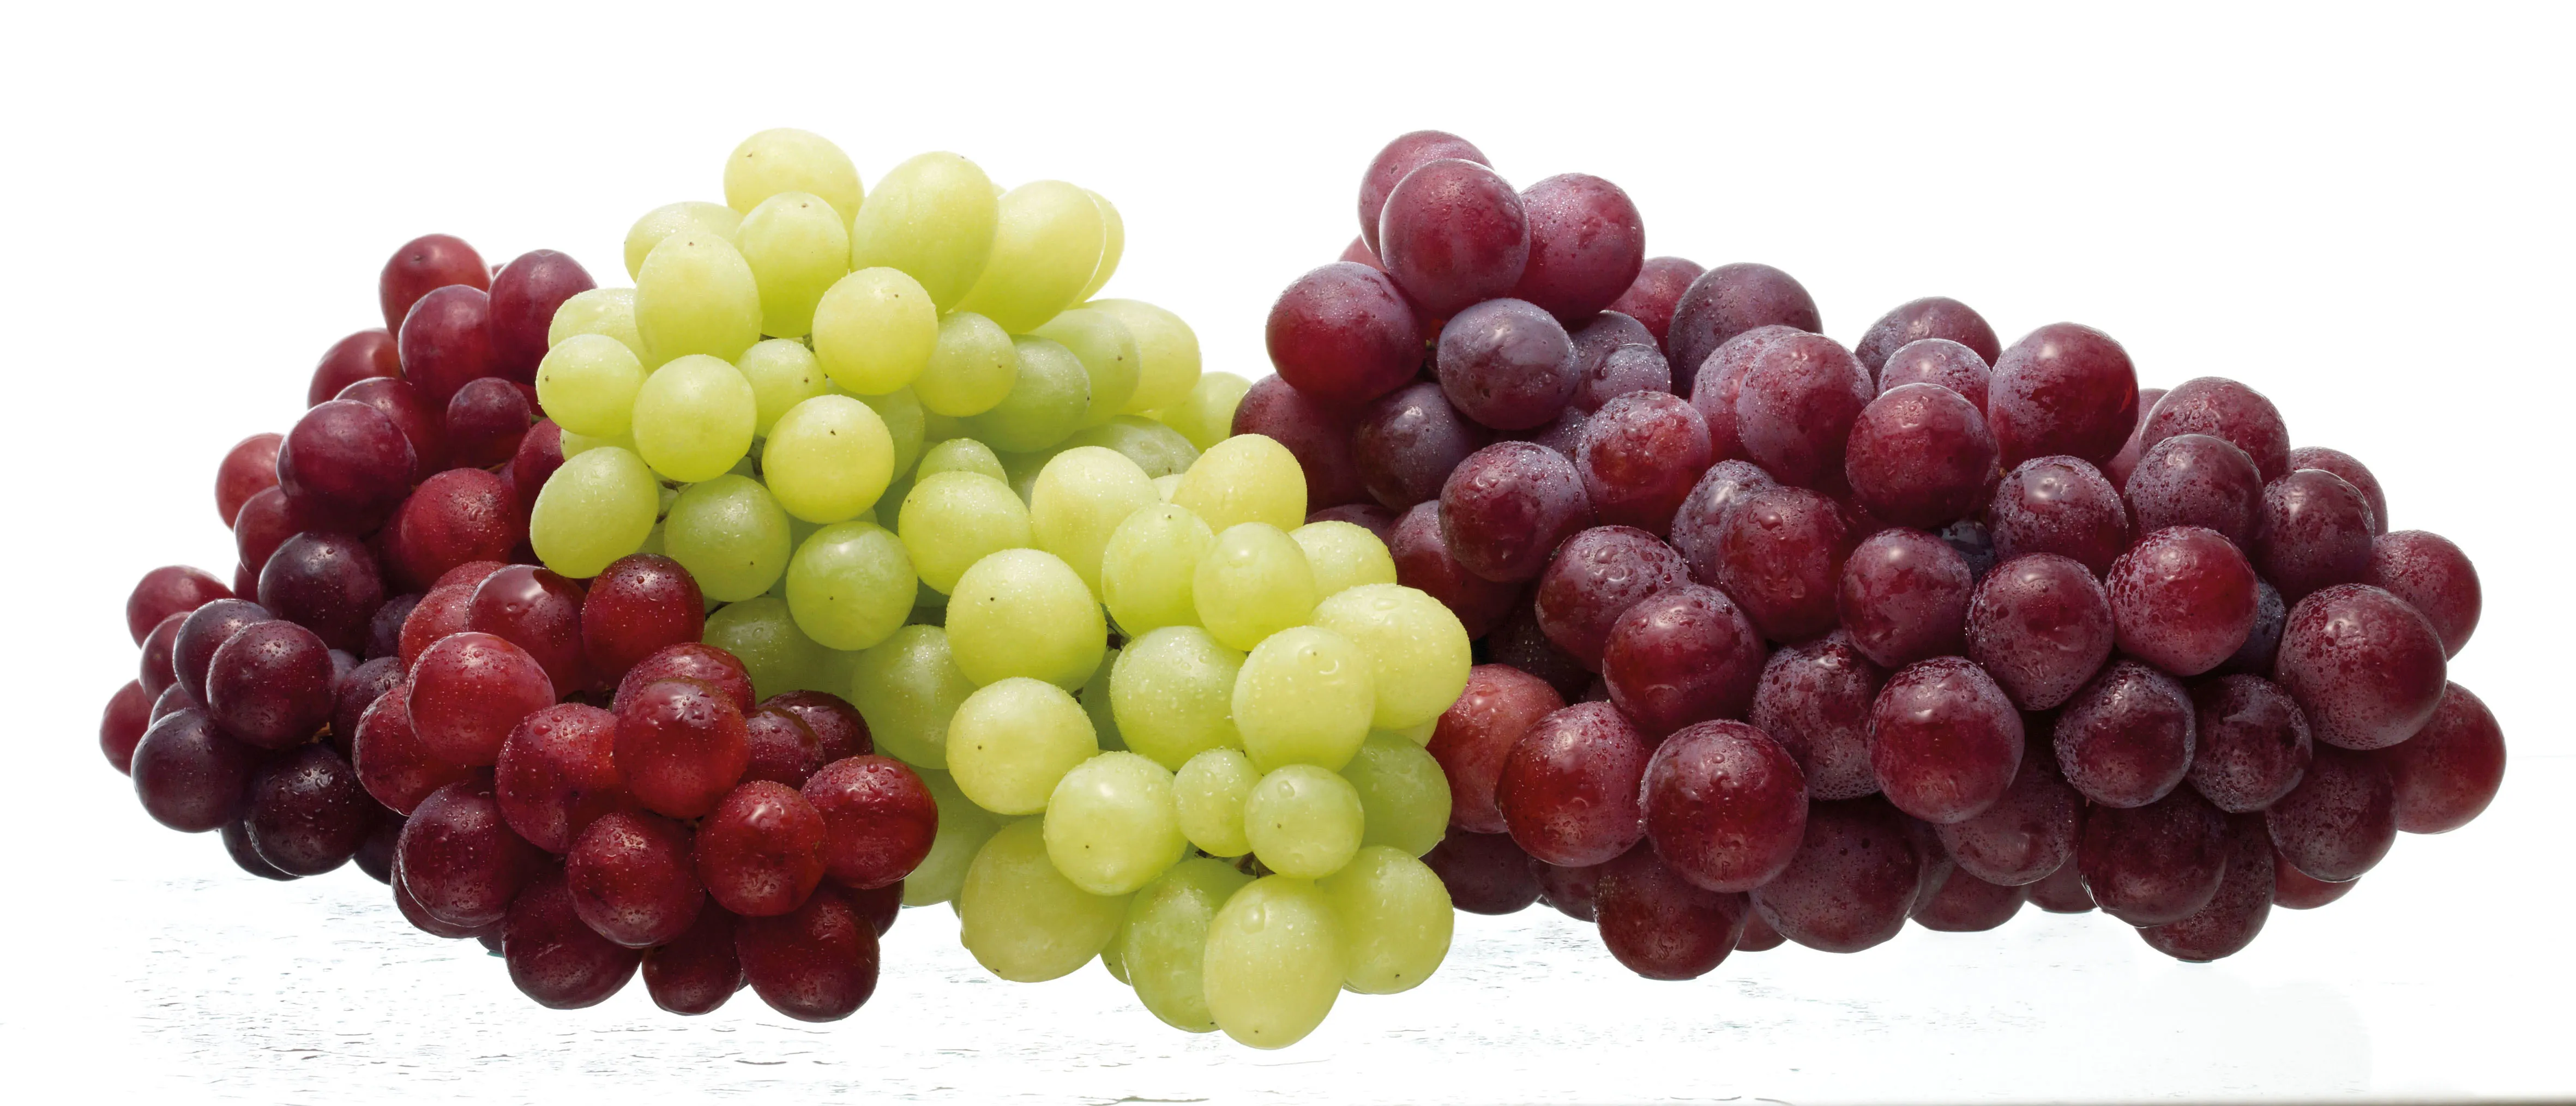 فوائد فاكهة العنب الأحمر 